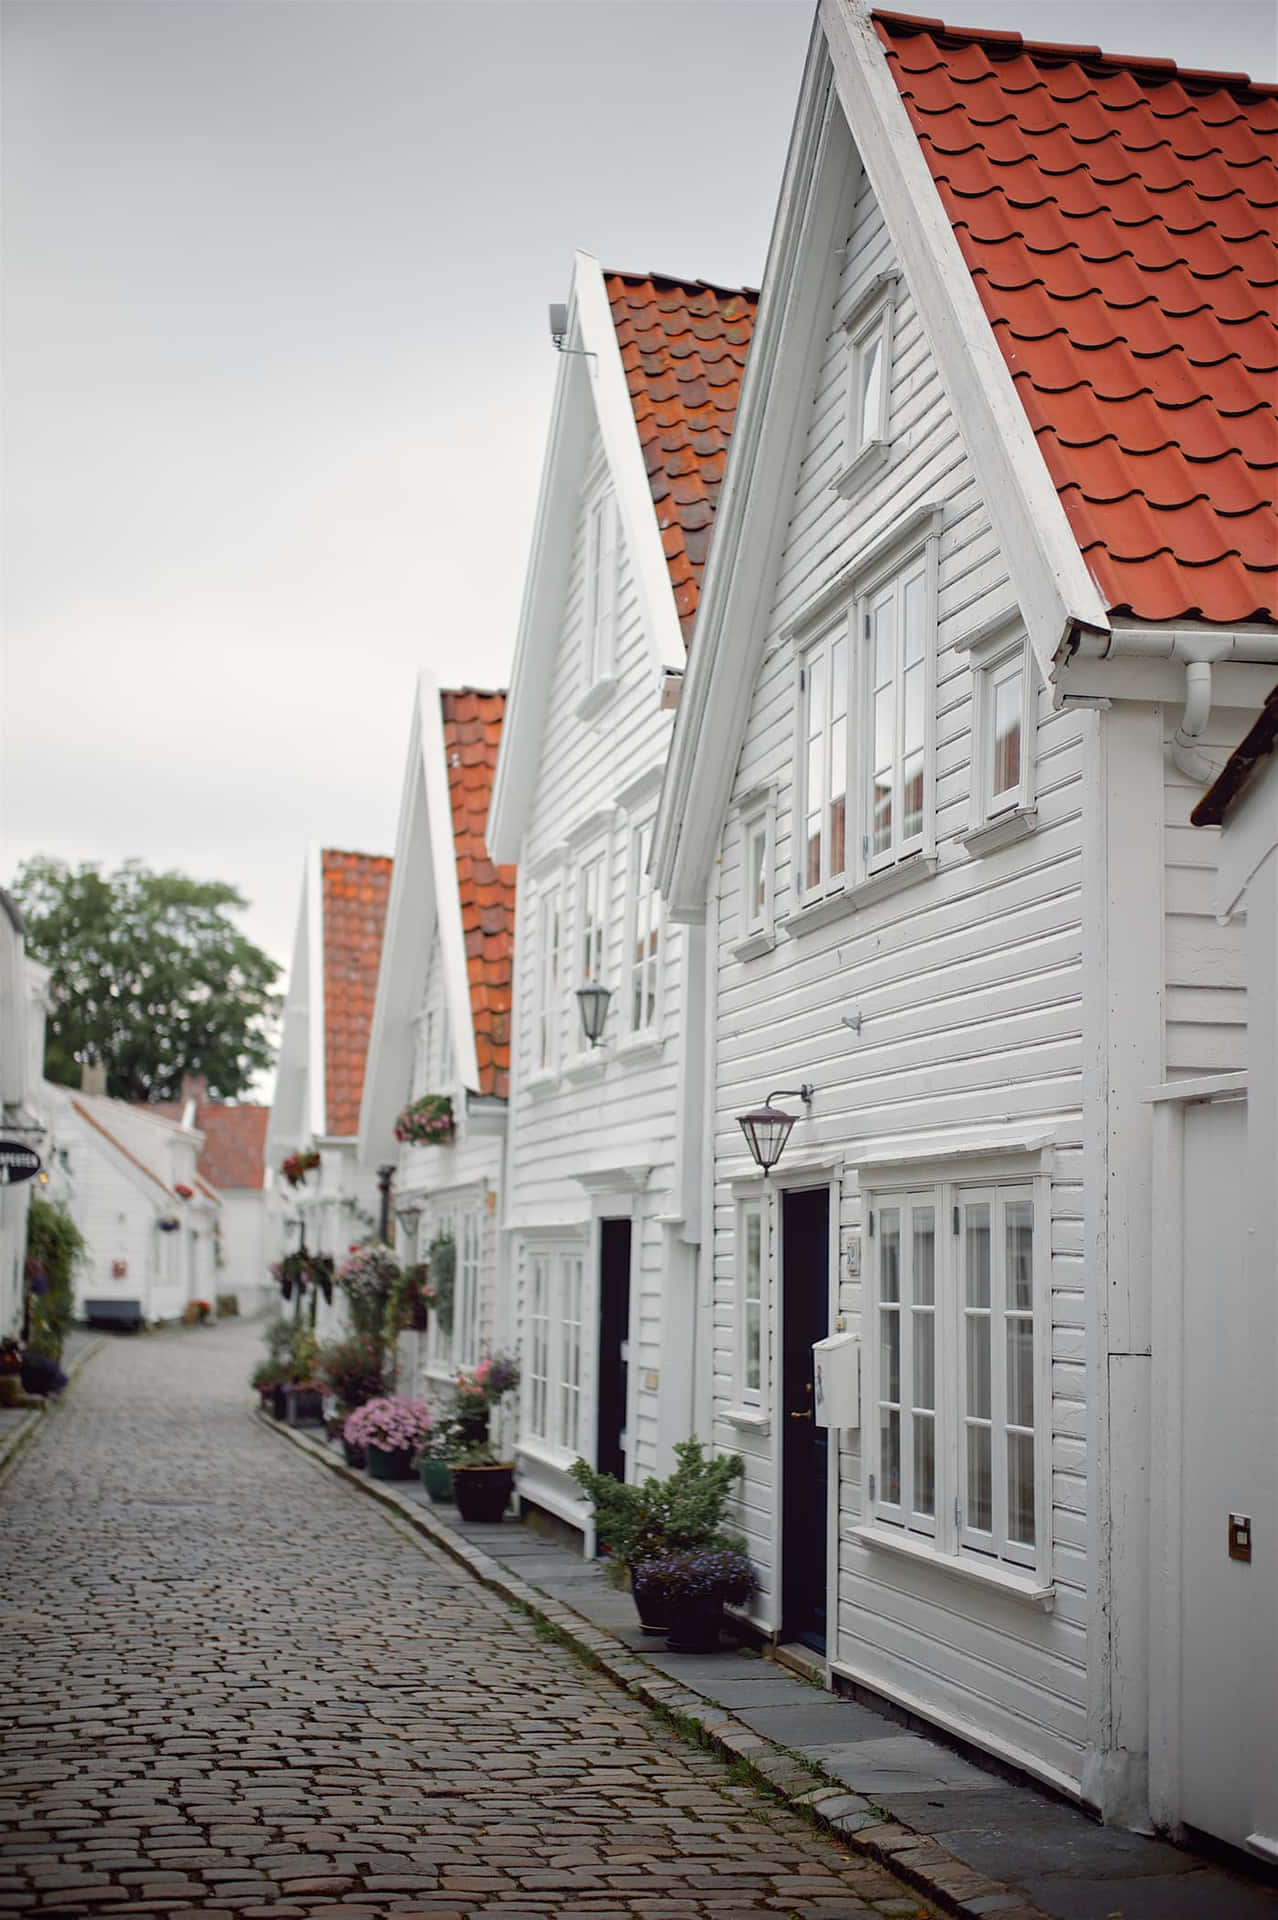 Stavanger Traditional Norwegian Houses Wallpaper